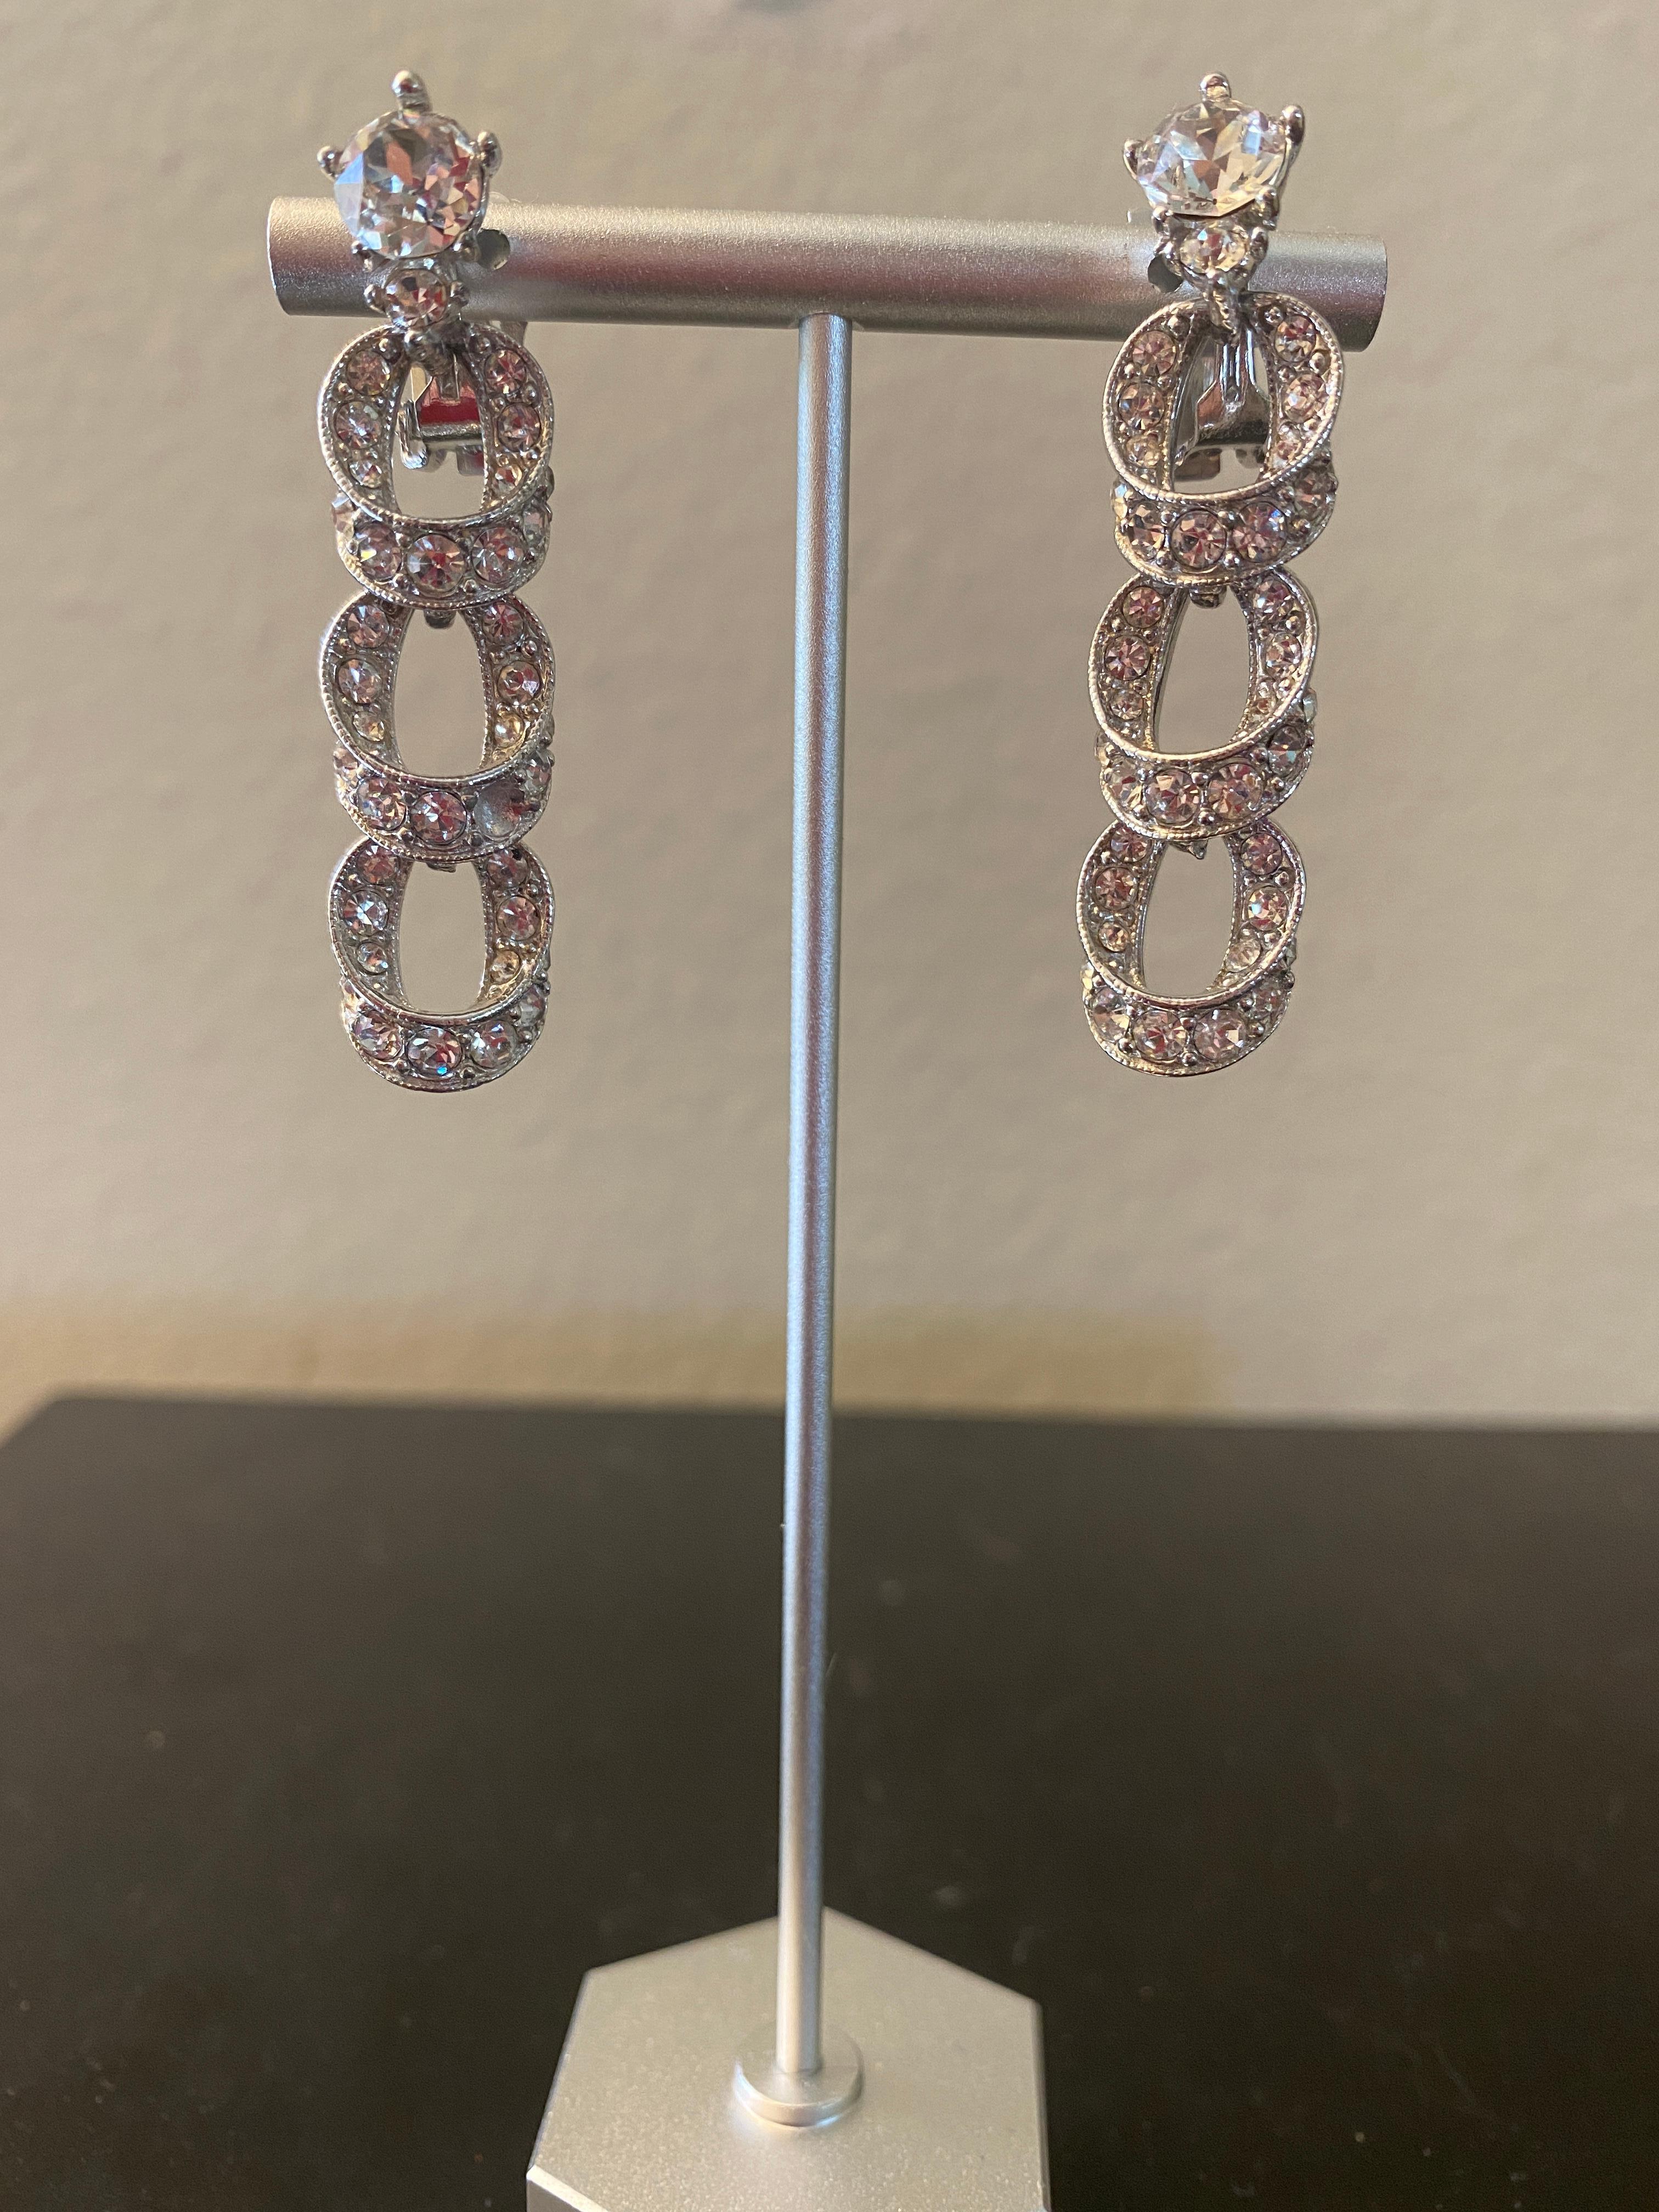 Nous collectionnons les boucles d'oreilles de bijoux fantaisie vintage depuis les années 80. Nous avons rassemblé, une par une, une belle collection de boucles d'oreilles de marque et sans marque. Fabriqué des années 1950 à 2000. Chacune est unique